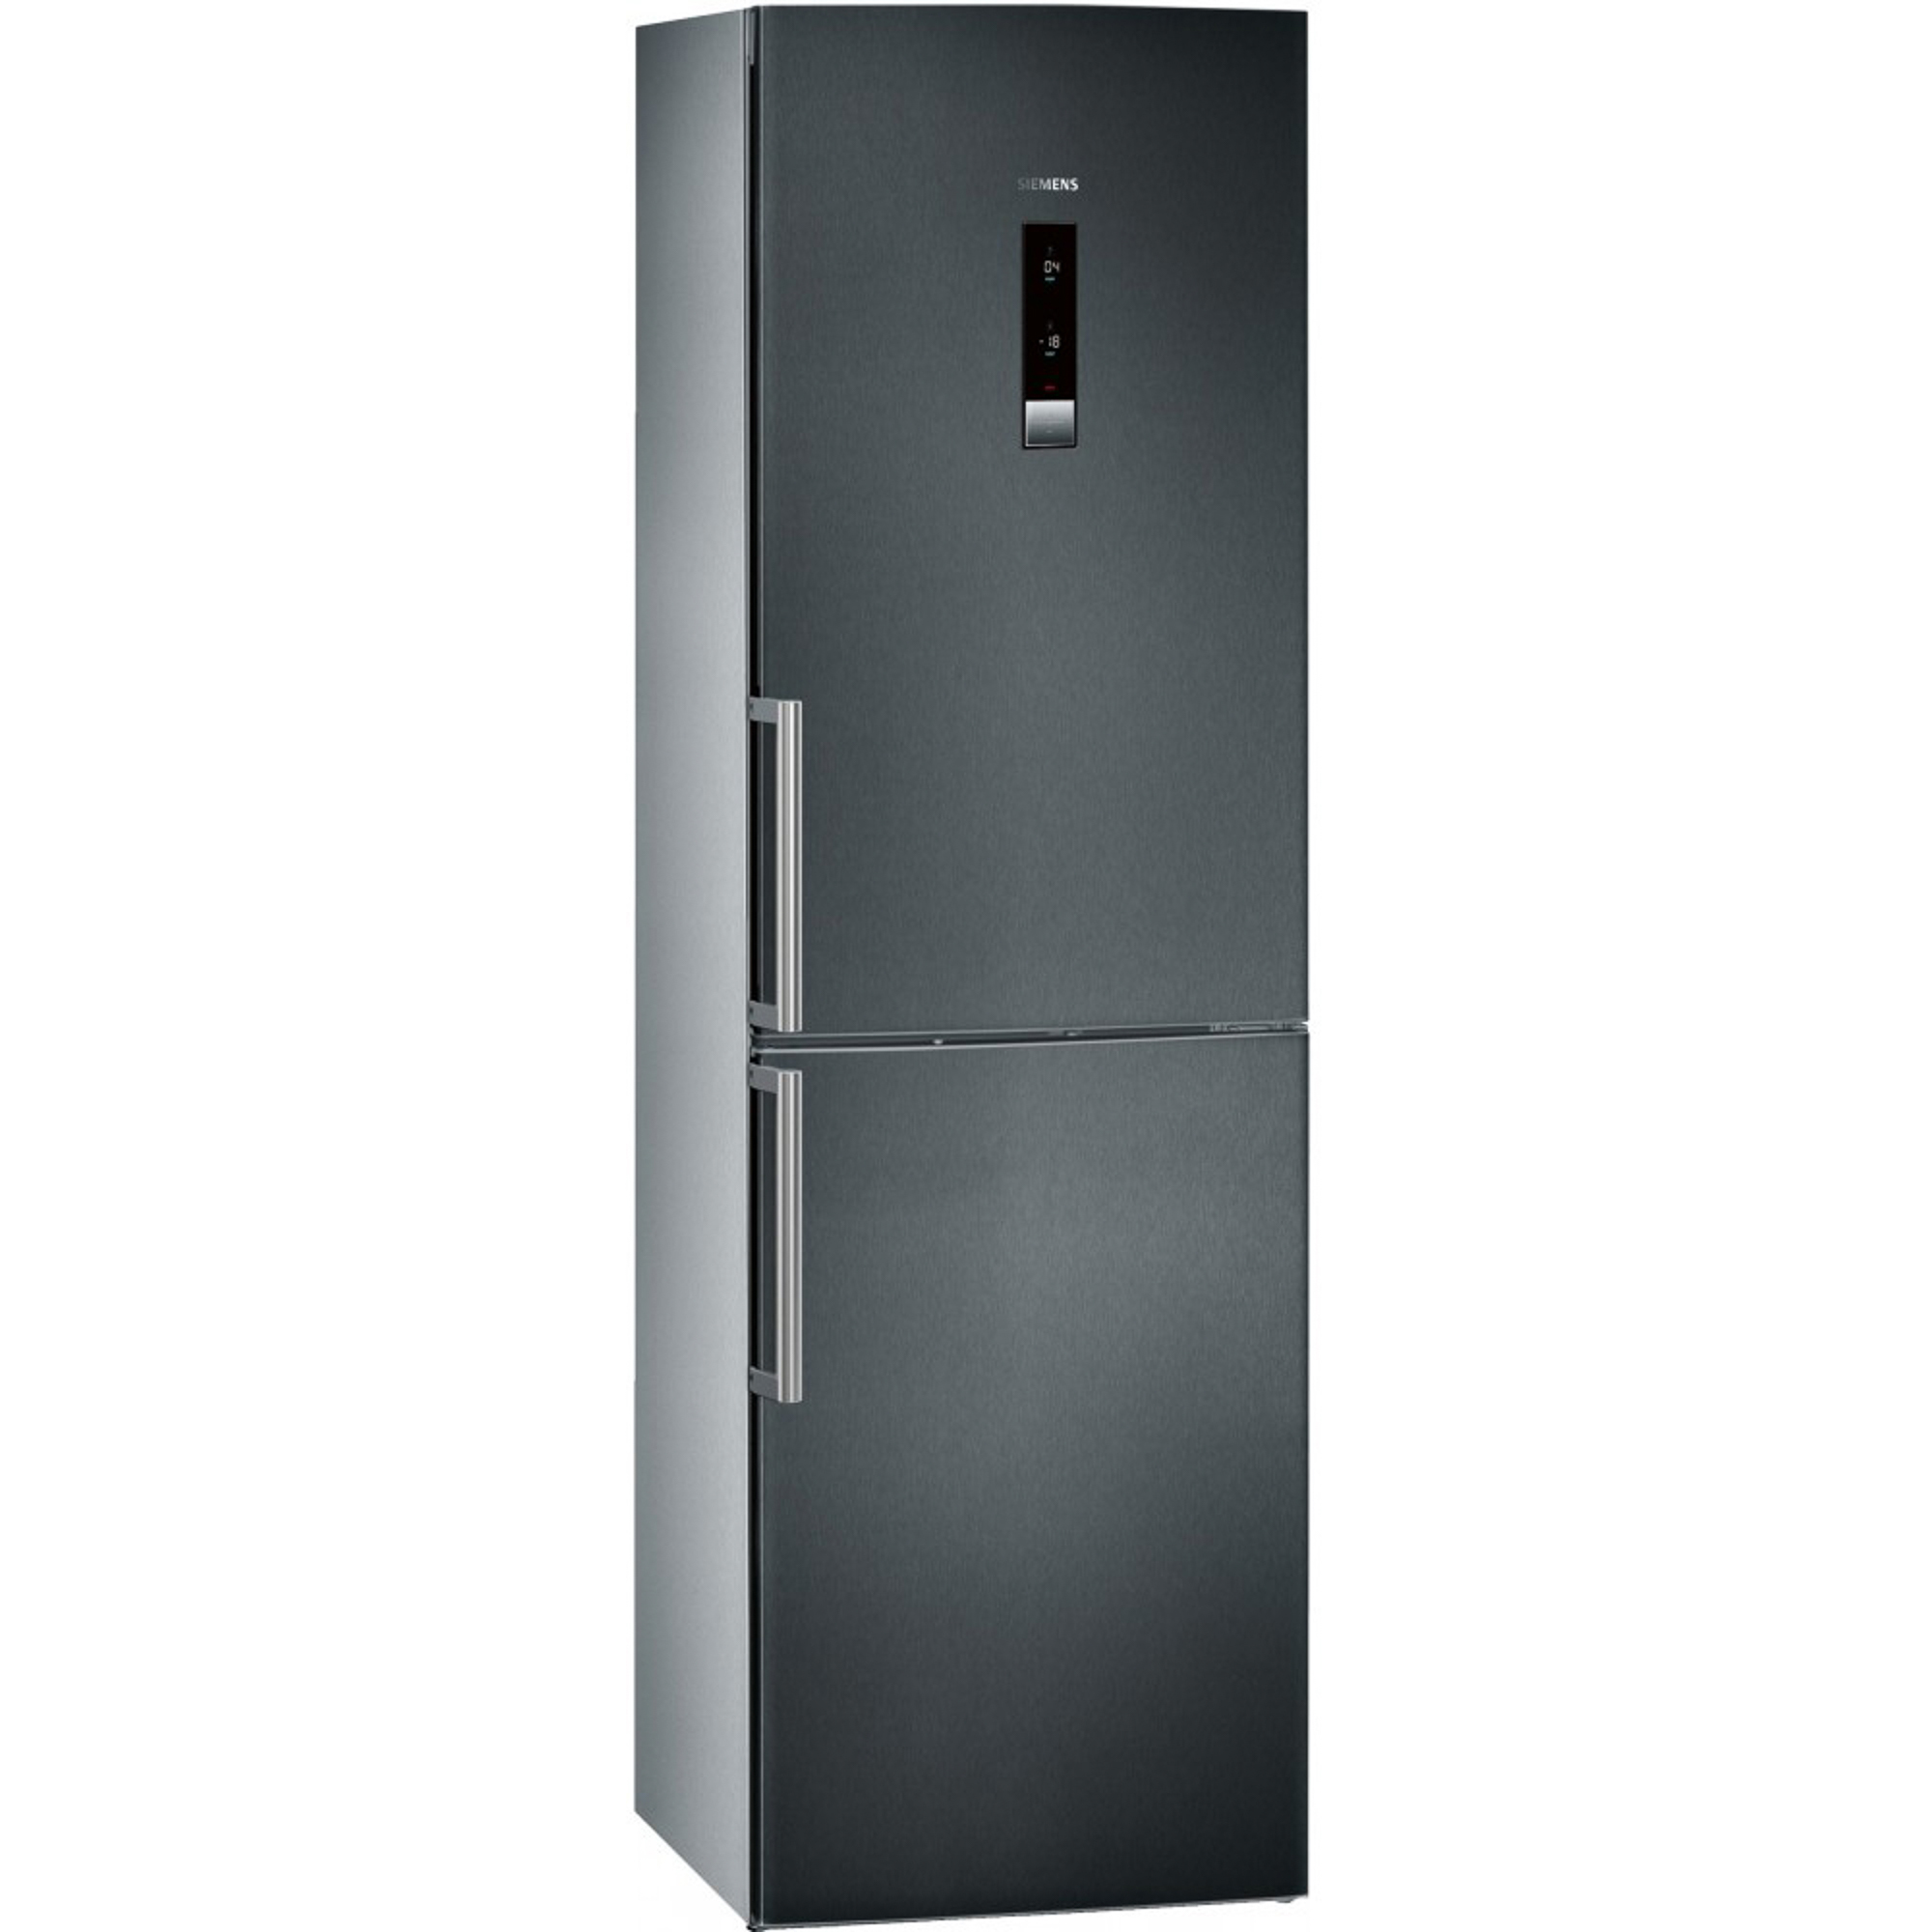 Купить холодильник в спб ноу фрост двухкамерный. Холодильник Siemens kg39nax26. Холодильник Сименс двухкамерный kg 39. Холодильник Siemens kg39eaw21r. Холодильник Siemens kg36eal20r.